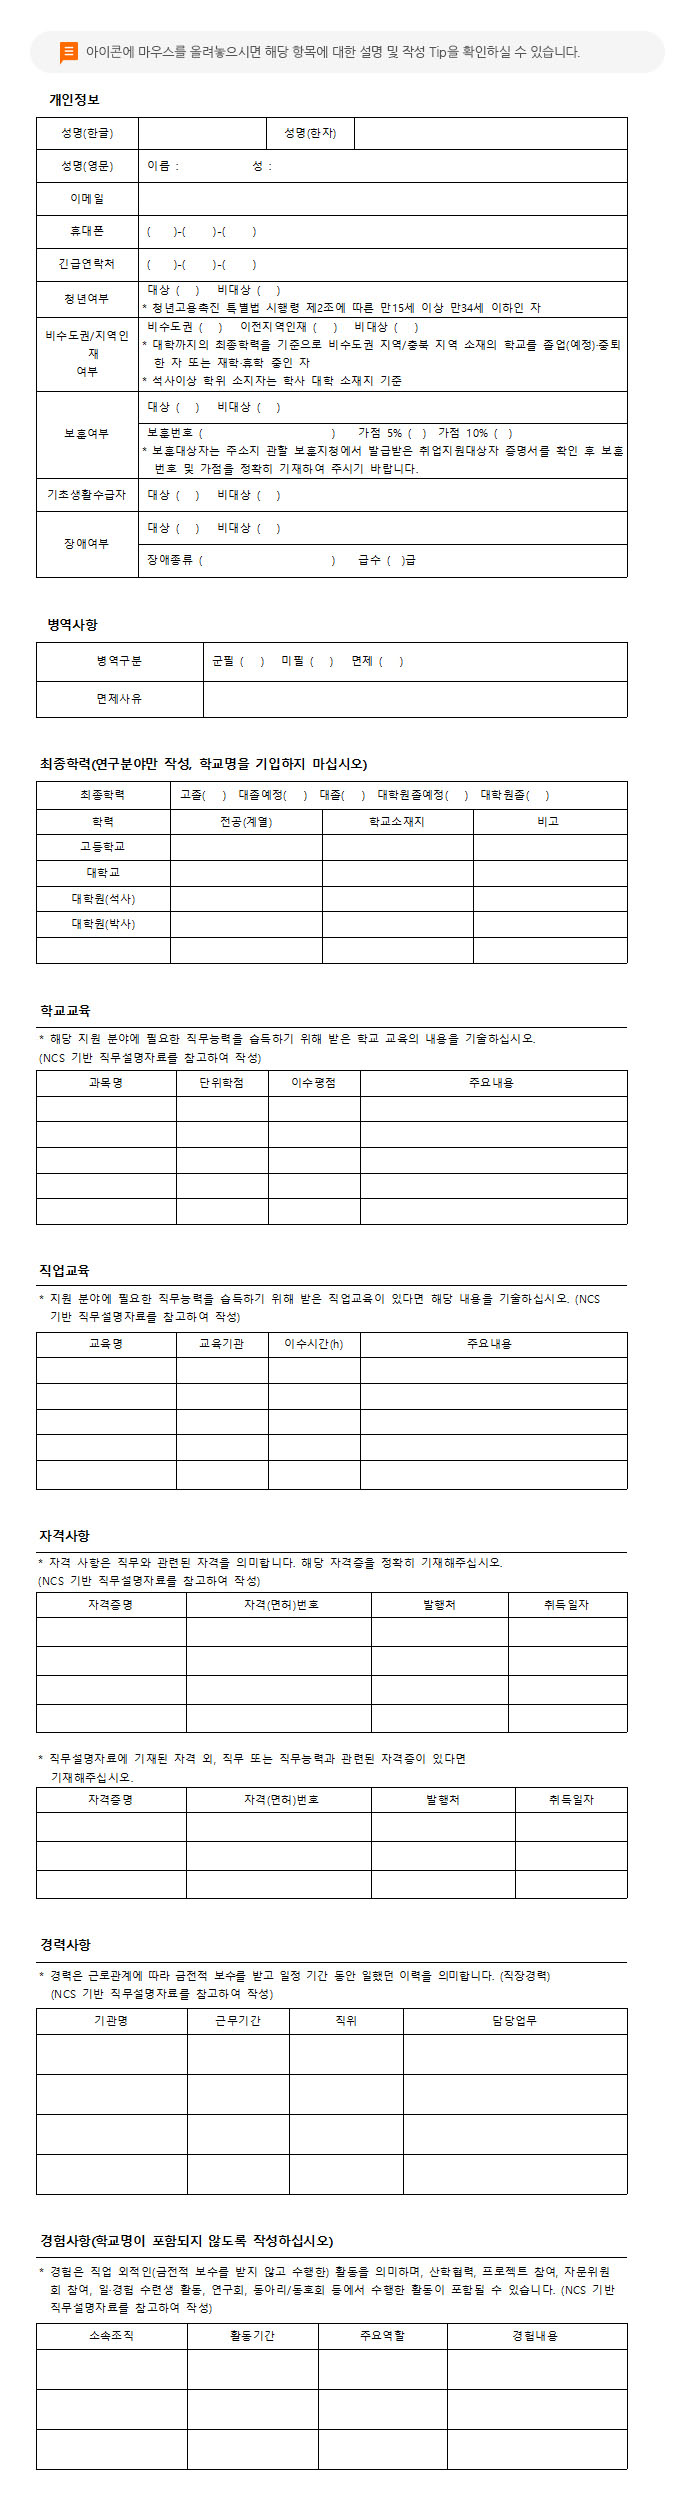 이력서 : 2017년 한국고용정보원 행정인턴 채용 문서로 버튼에 마우스를 올려놓으시면 해당 항목에 대한 설명 및 작성 Tip을 확인하실 수 있습니다.